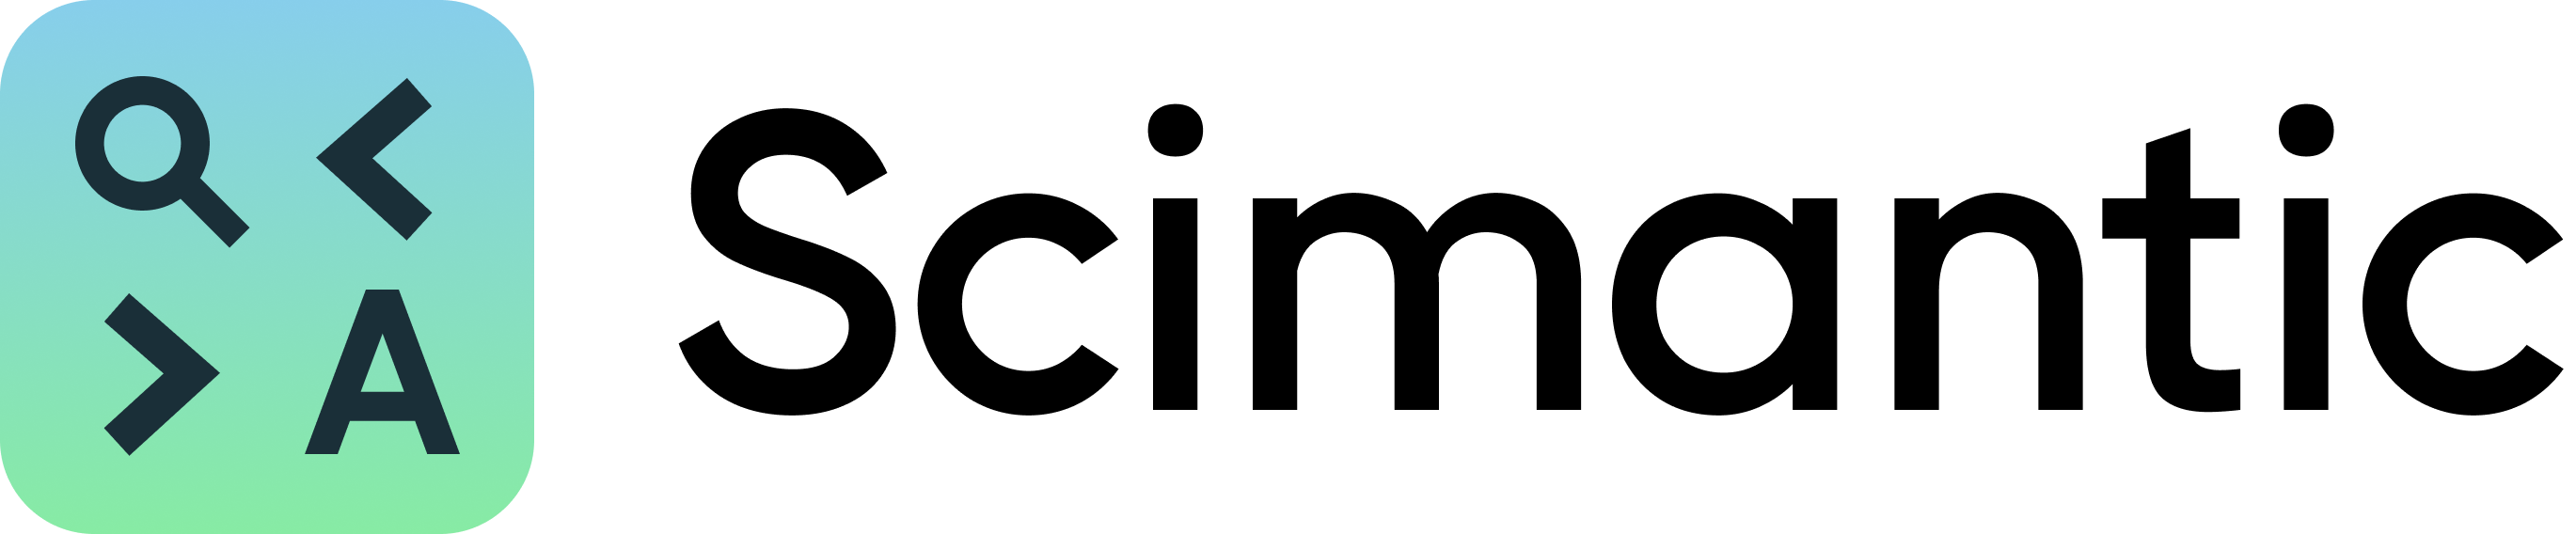 Scimantic logo